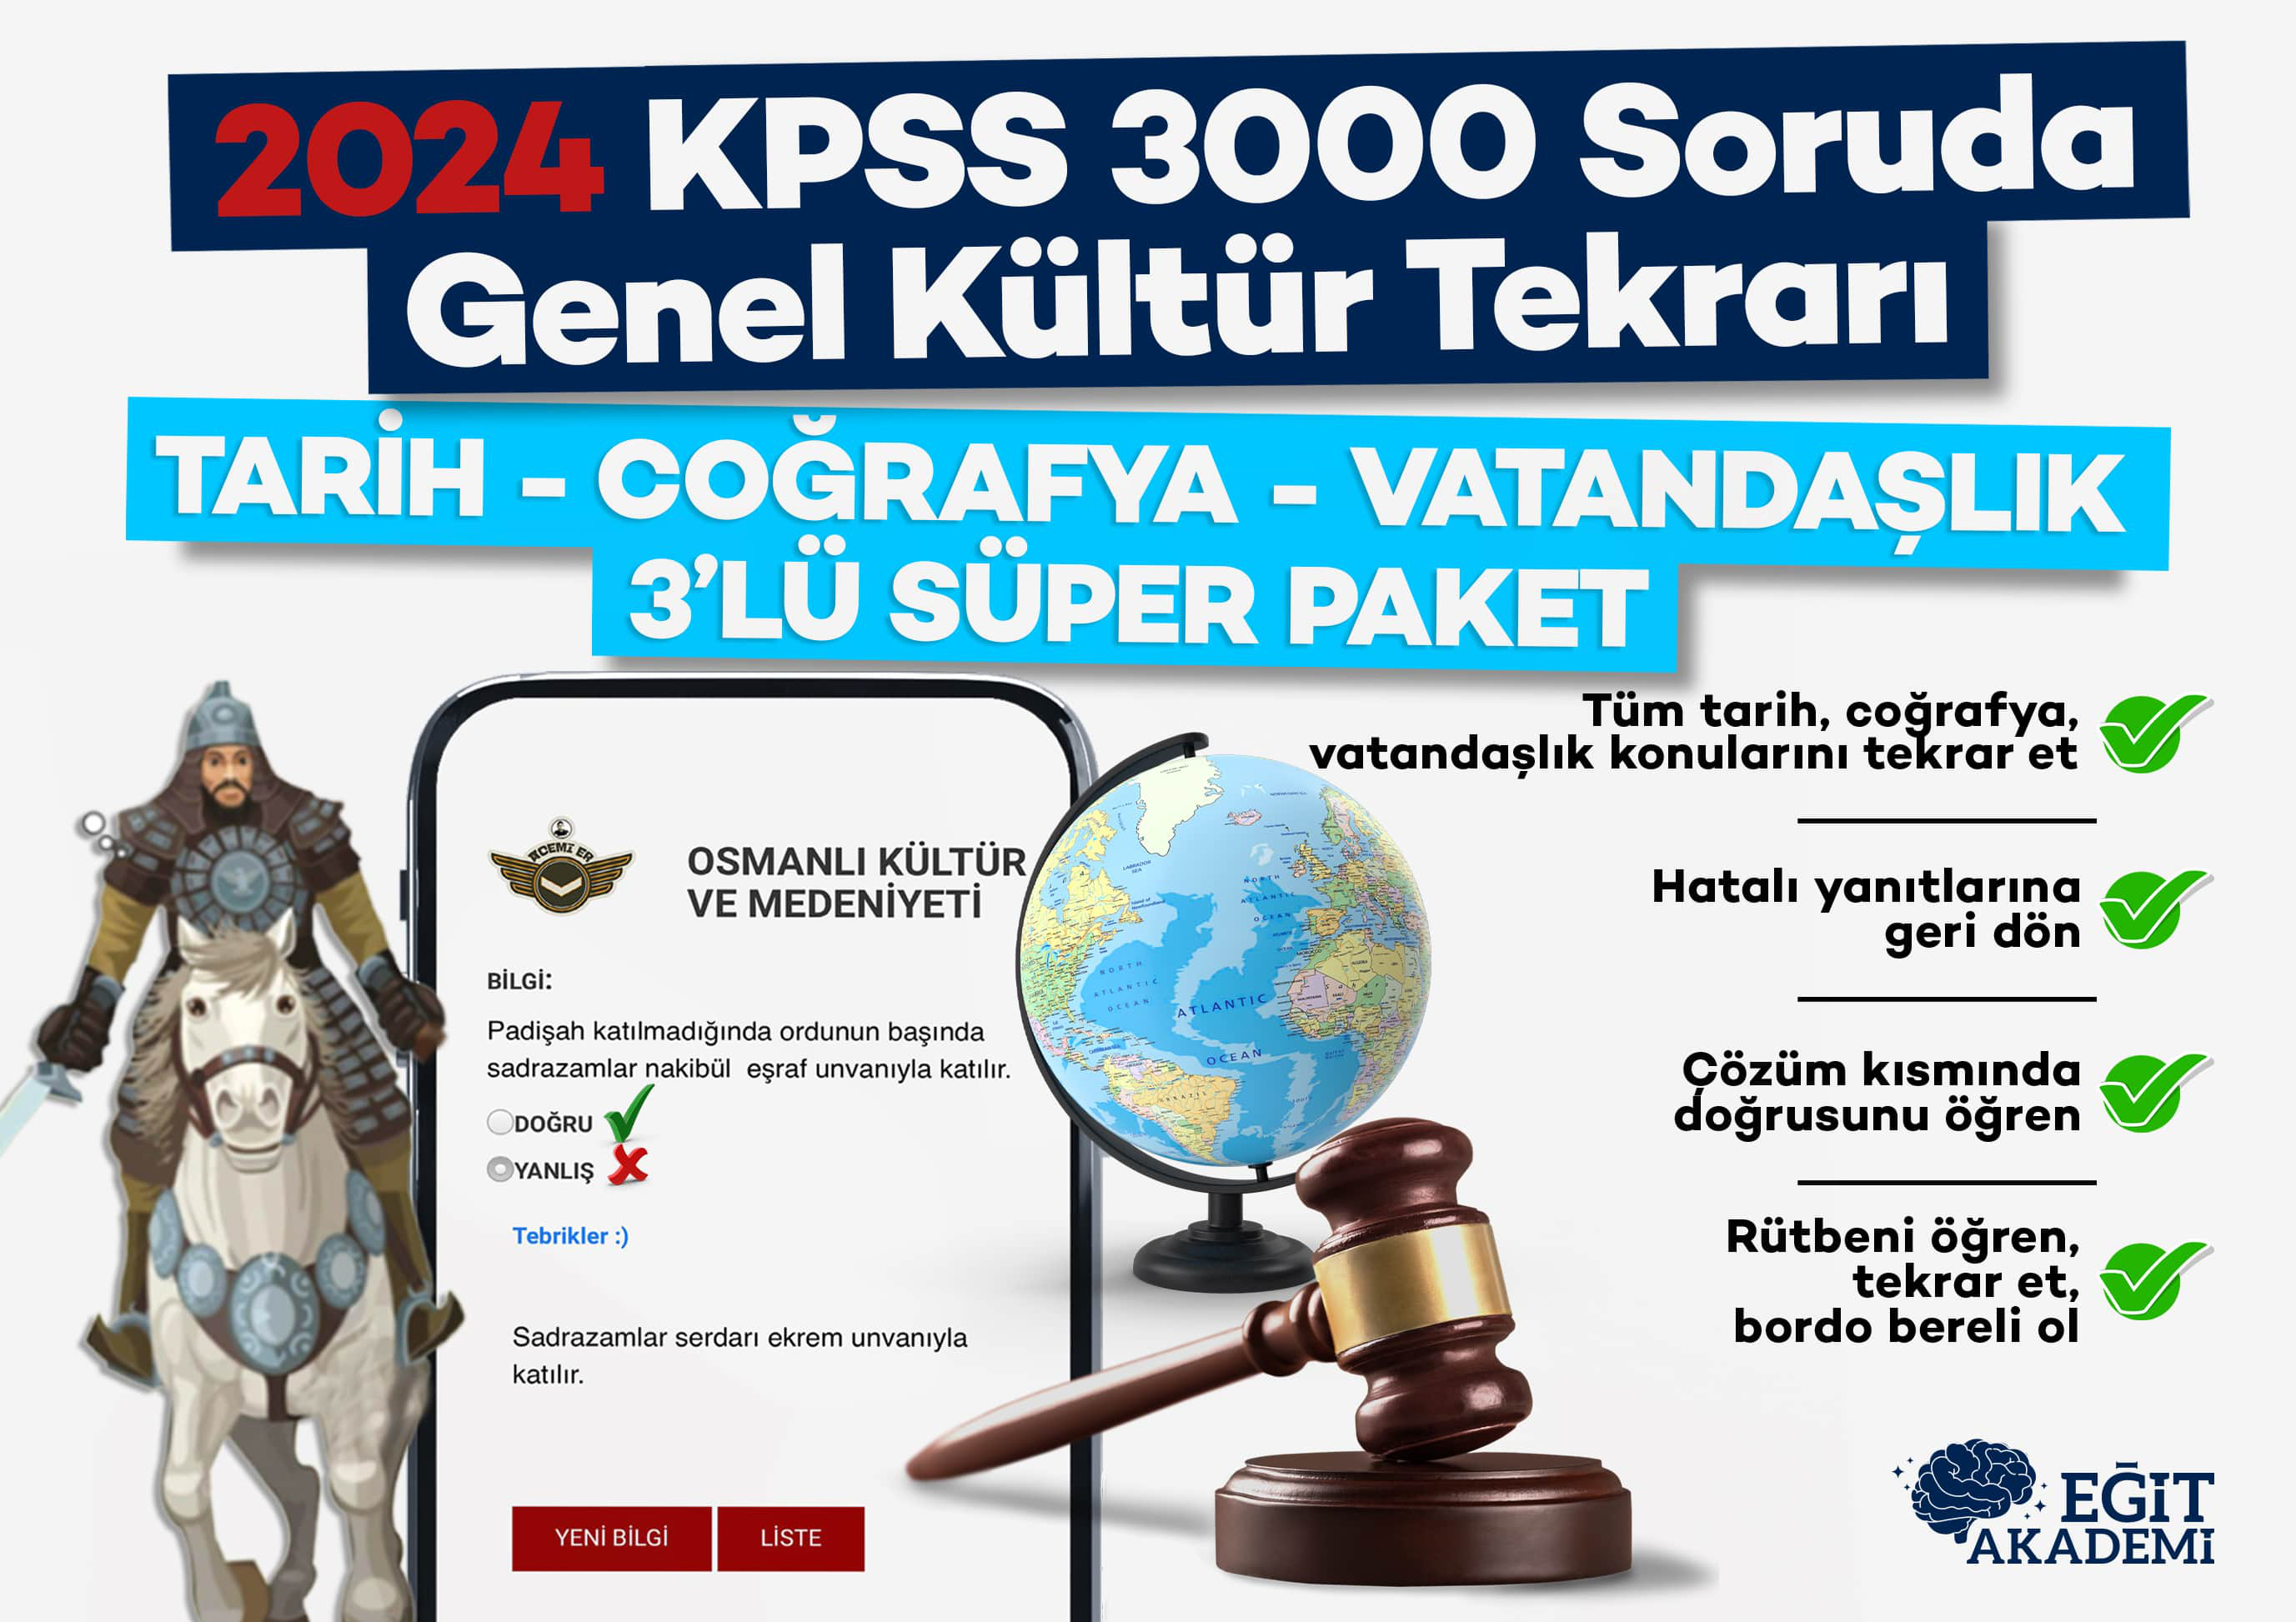 2024 KPSS 3000 SORUDA GENEL KÜLTÜR TEKRARI (TARİH-COĞRAFYA-VATANDAŞLIK)